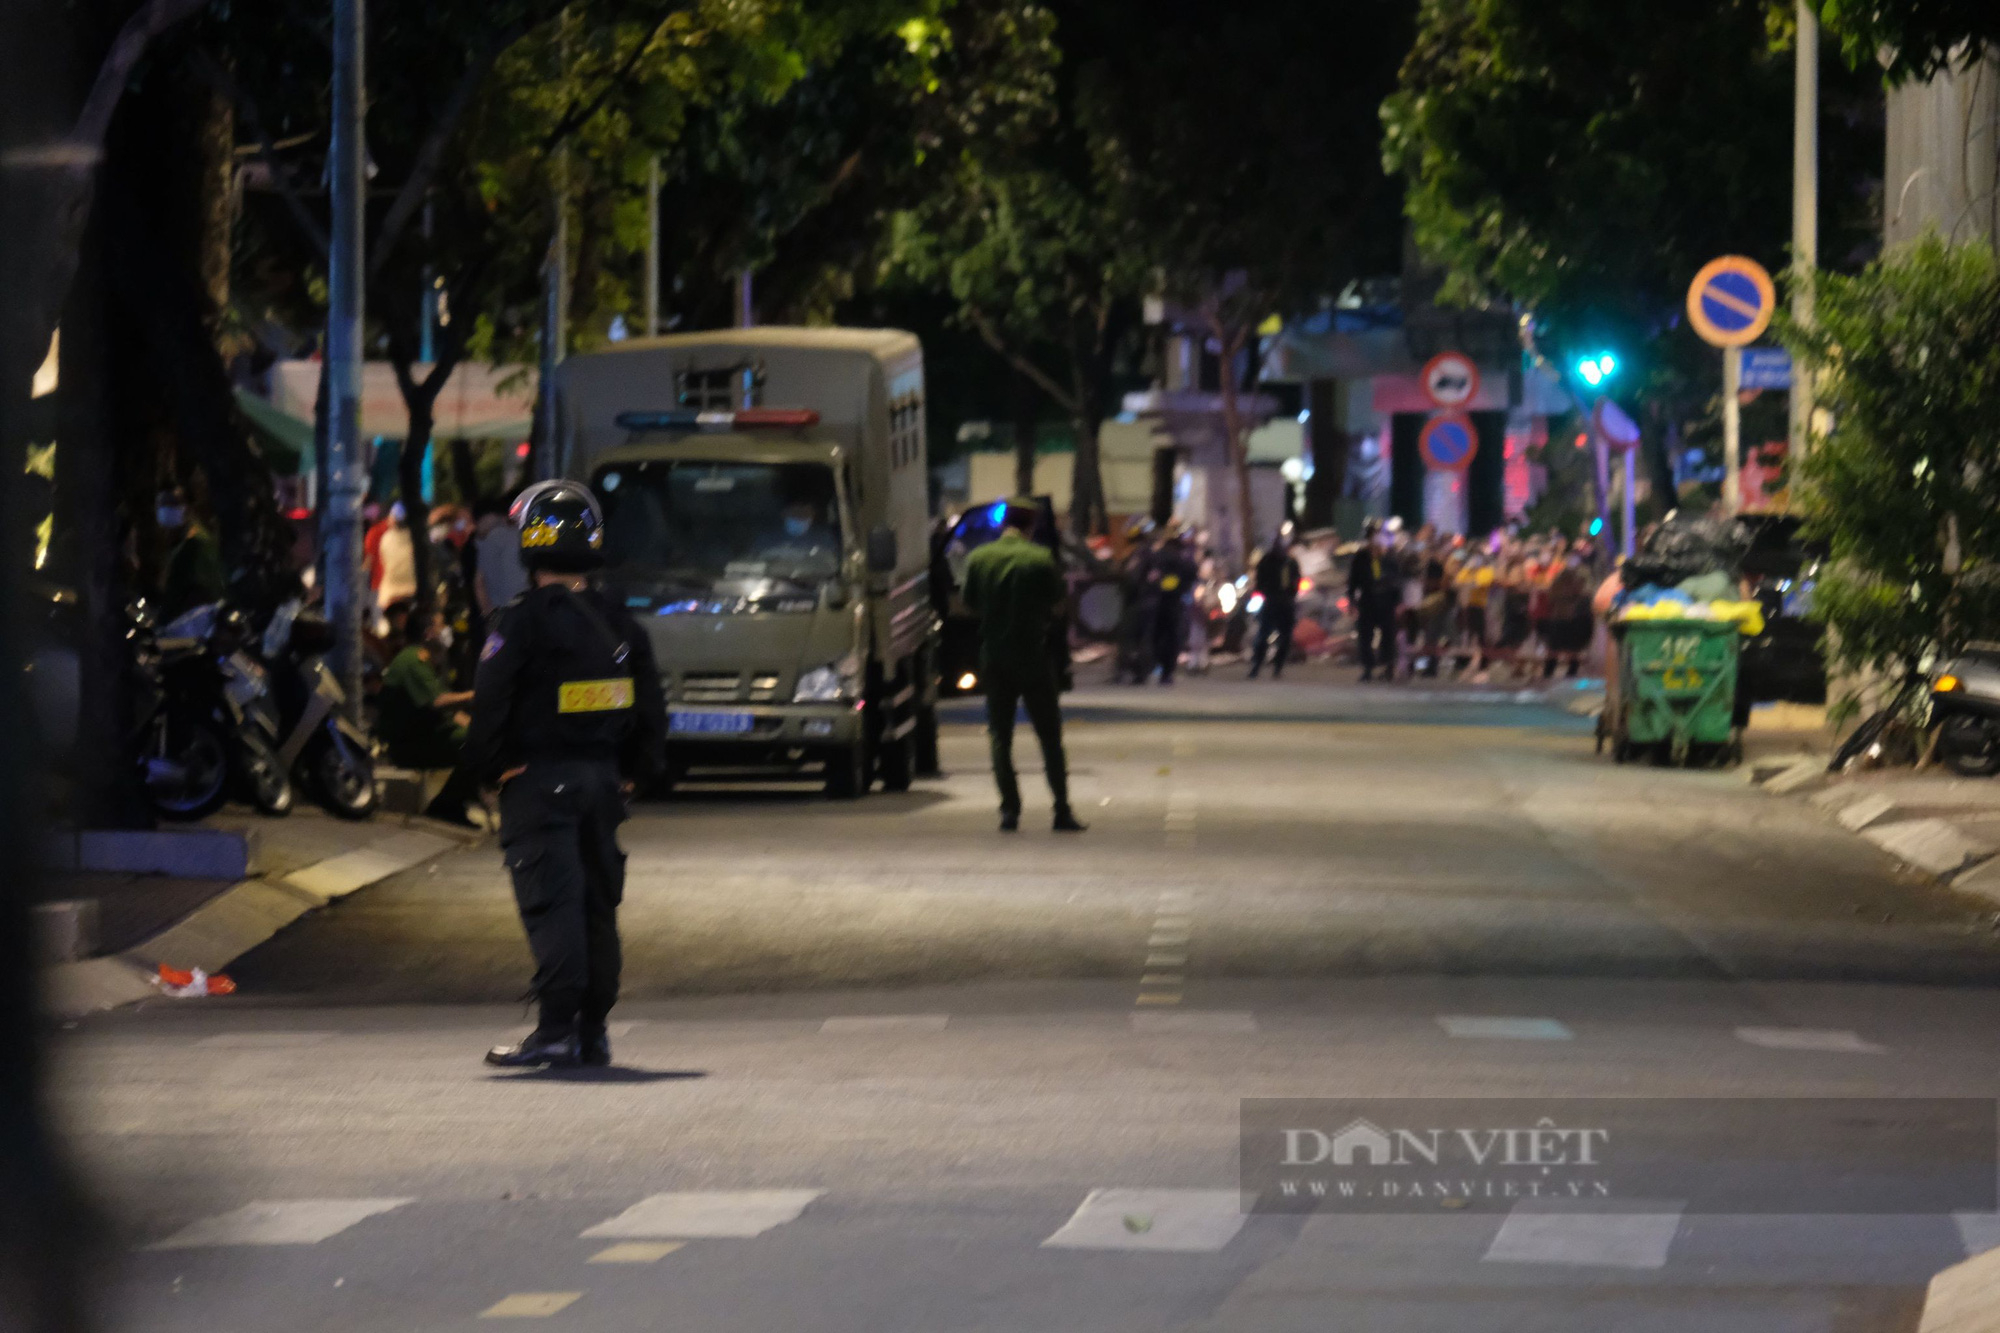 CẬP NHẬT: 22h15 tối nay, 2 xe chở phạm nhân rời khỏi khu vực biệt thự của vợ chồng bà Nguyễn Phương Hằng - Ảnh 1.